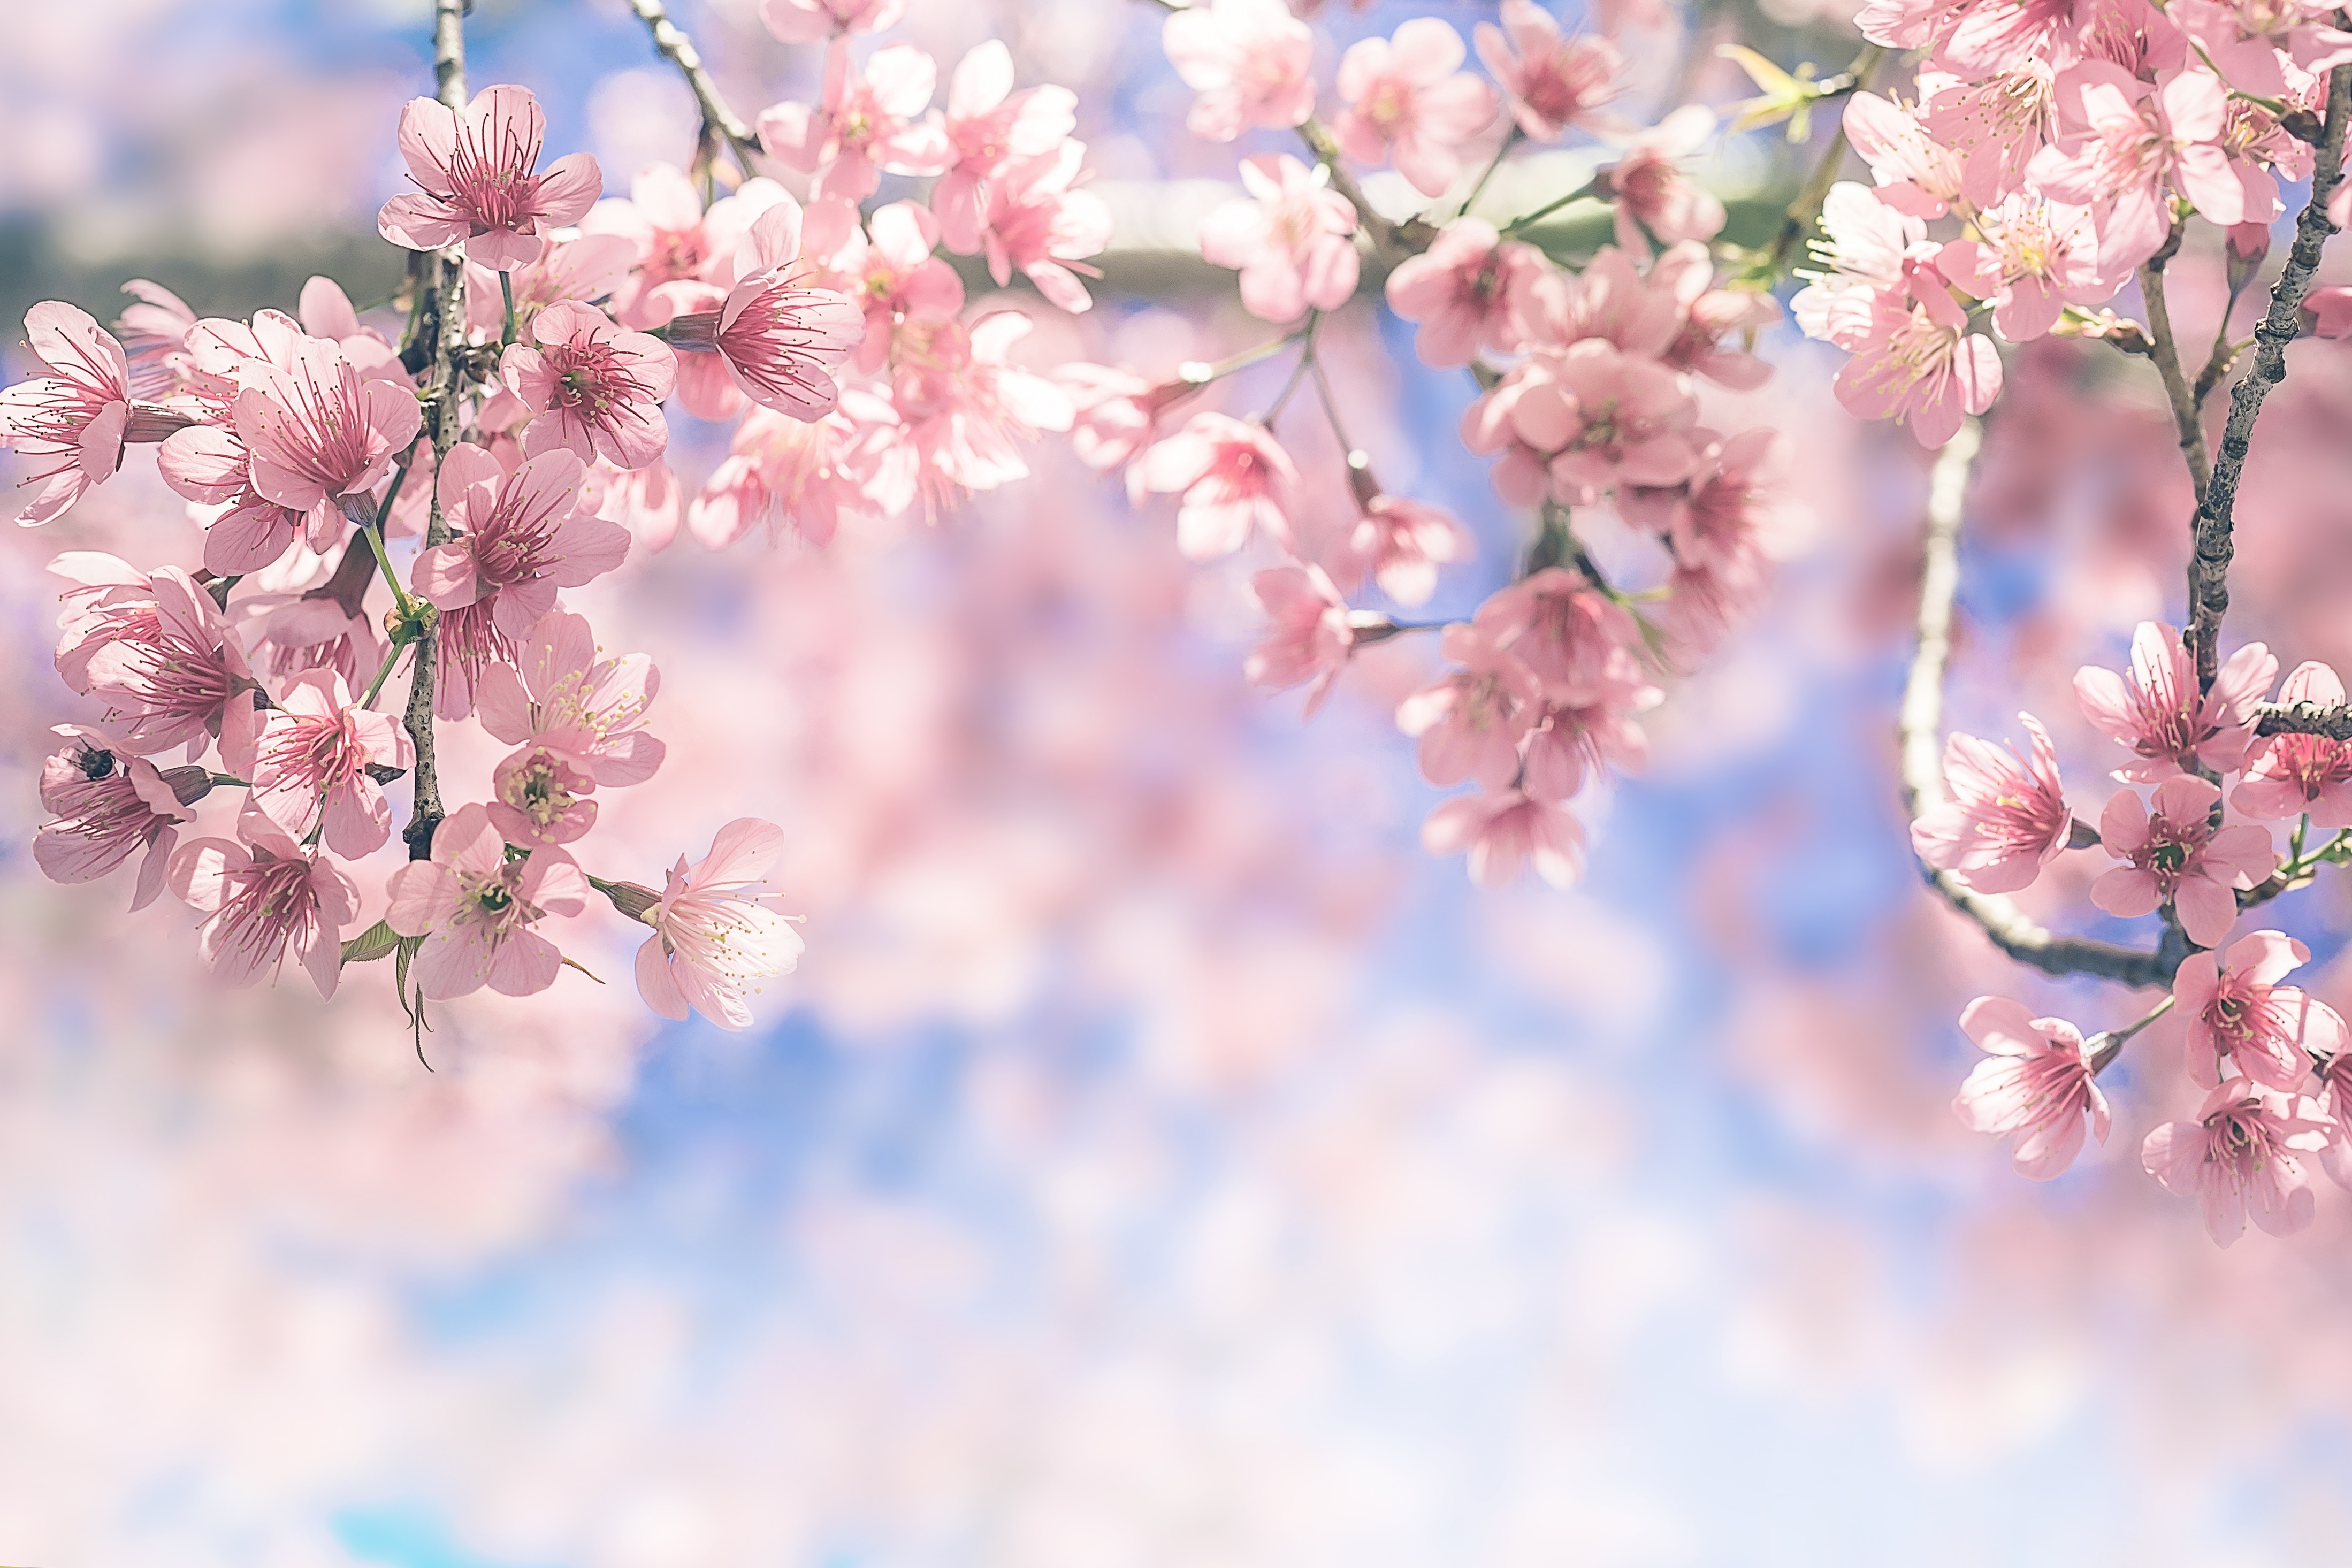 Bạn yêu hoa Nhật? Hình nền 4K siêu nét đem đến cho bạn những hình ảnh tươi sáng, yên bình và đầy màu sắc của những cánh hoa Nhật tuyệt đẹp. Với độ phân giải cao, các chi tiết được hiển thị rõ nét và sắc nét tuyệt đẹp.